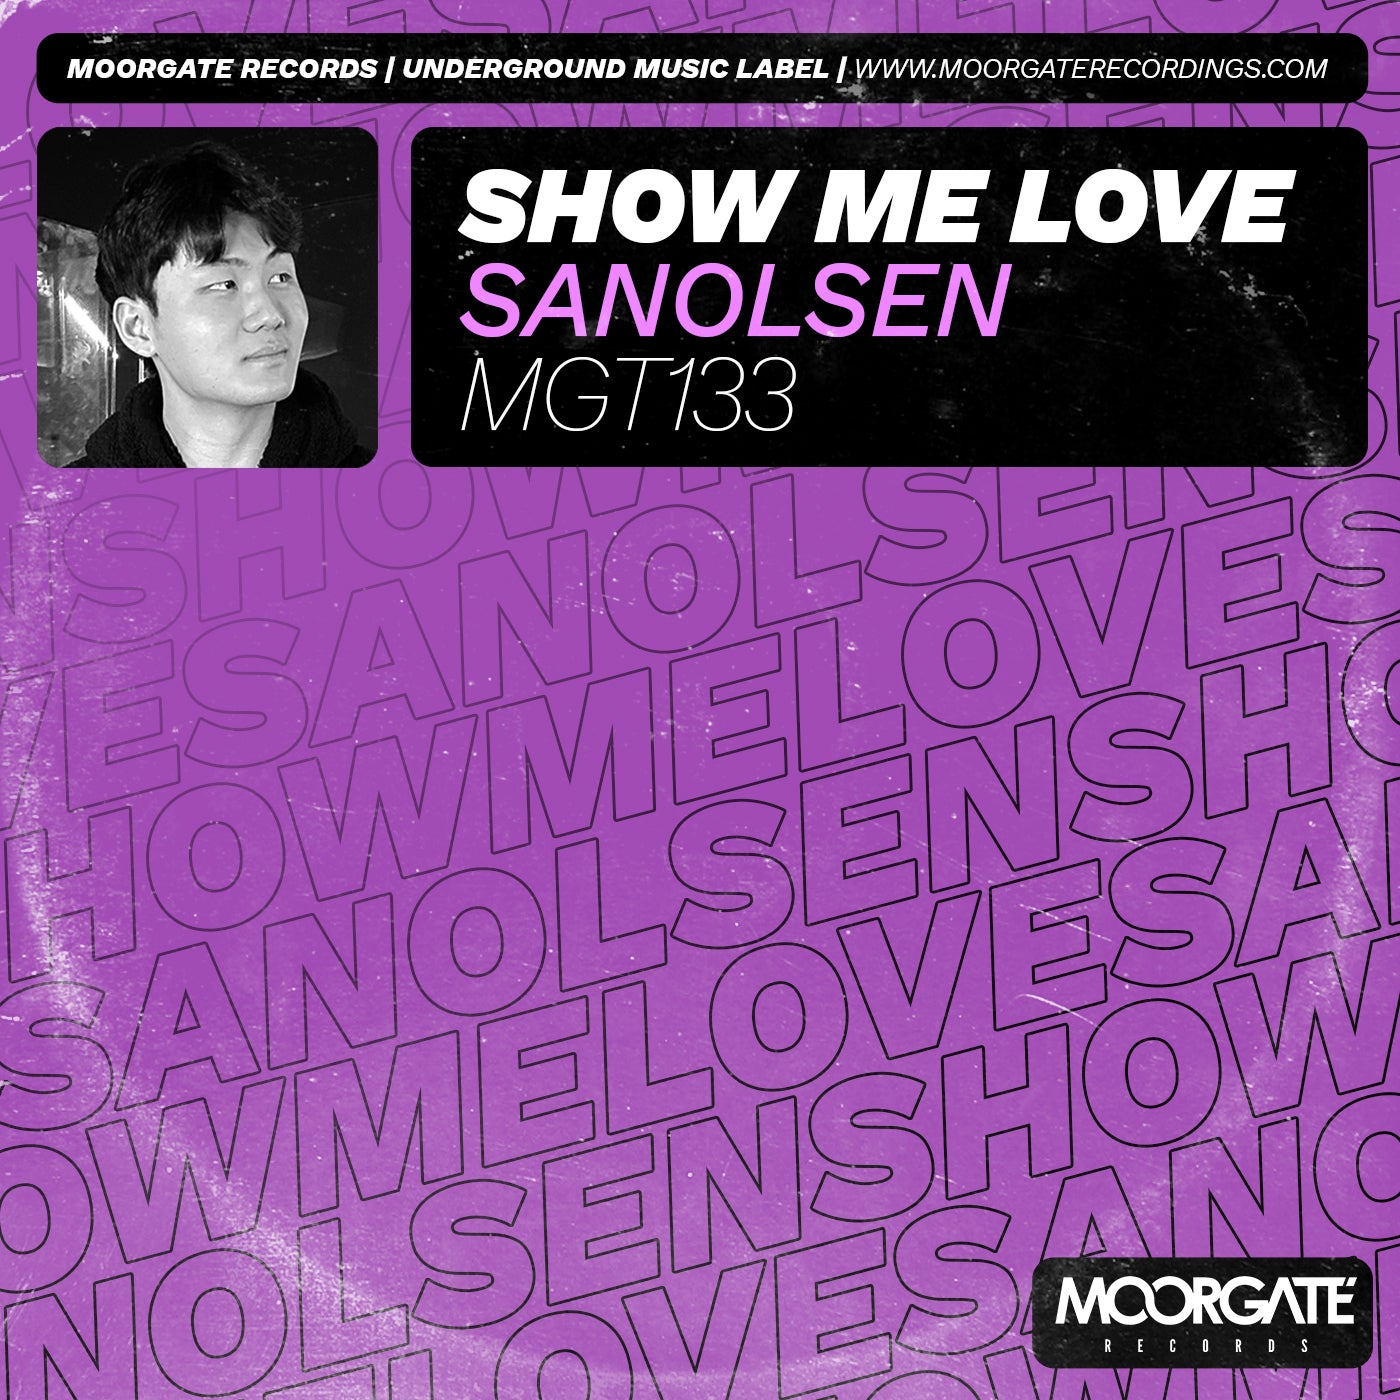 Sanolsen - Show Me Love [Moorgate Records]